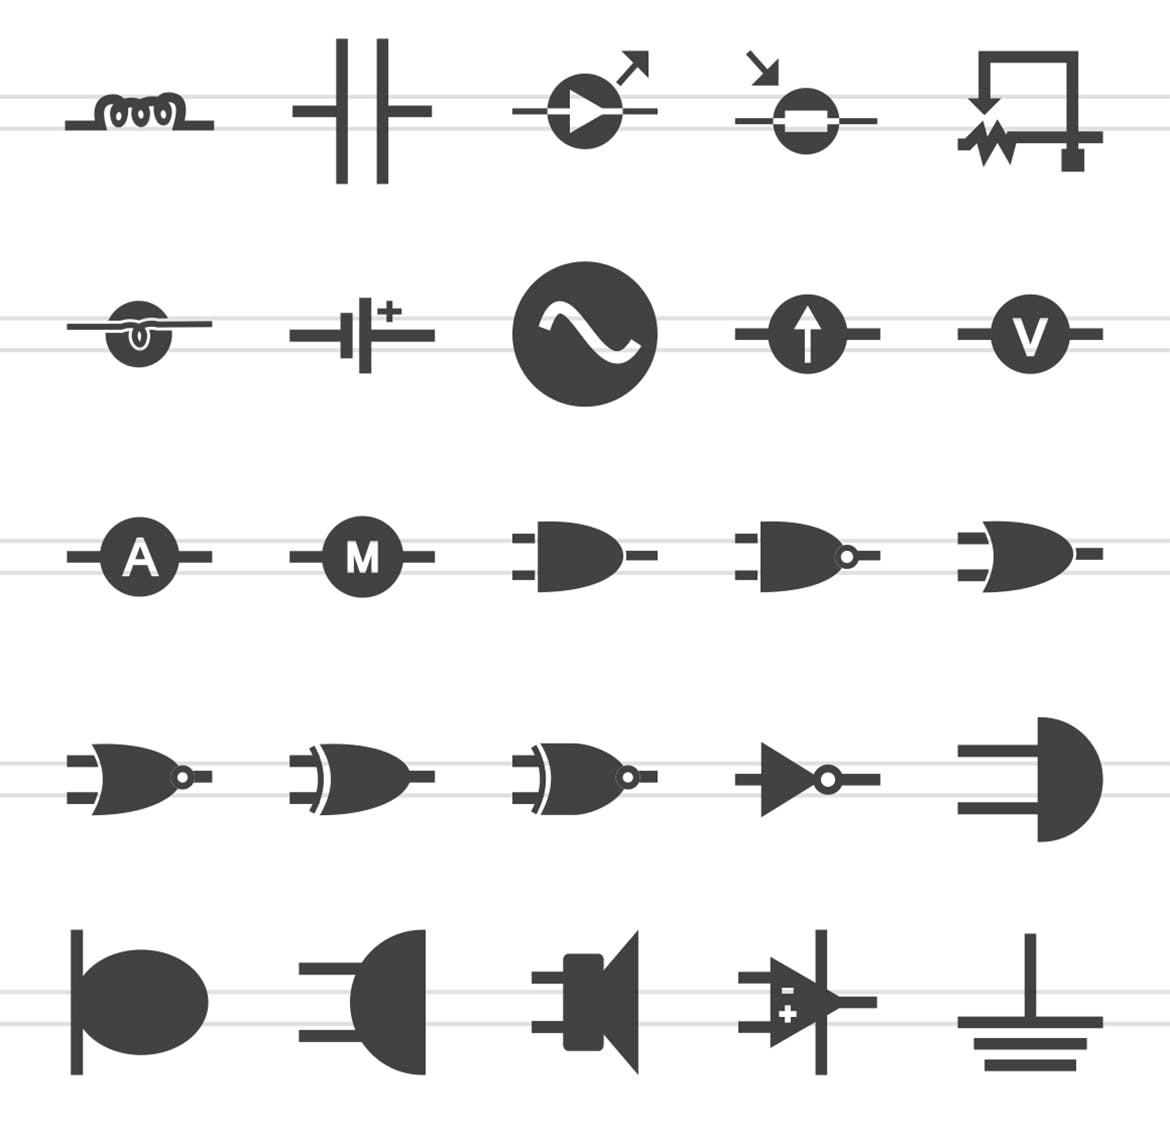 50枚电路线路板主题黑色字体素材天下精选图标 50 Electric Circuits Glyph Icons插图(2)